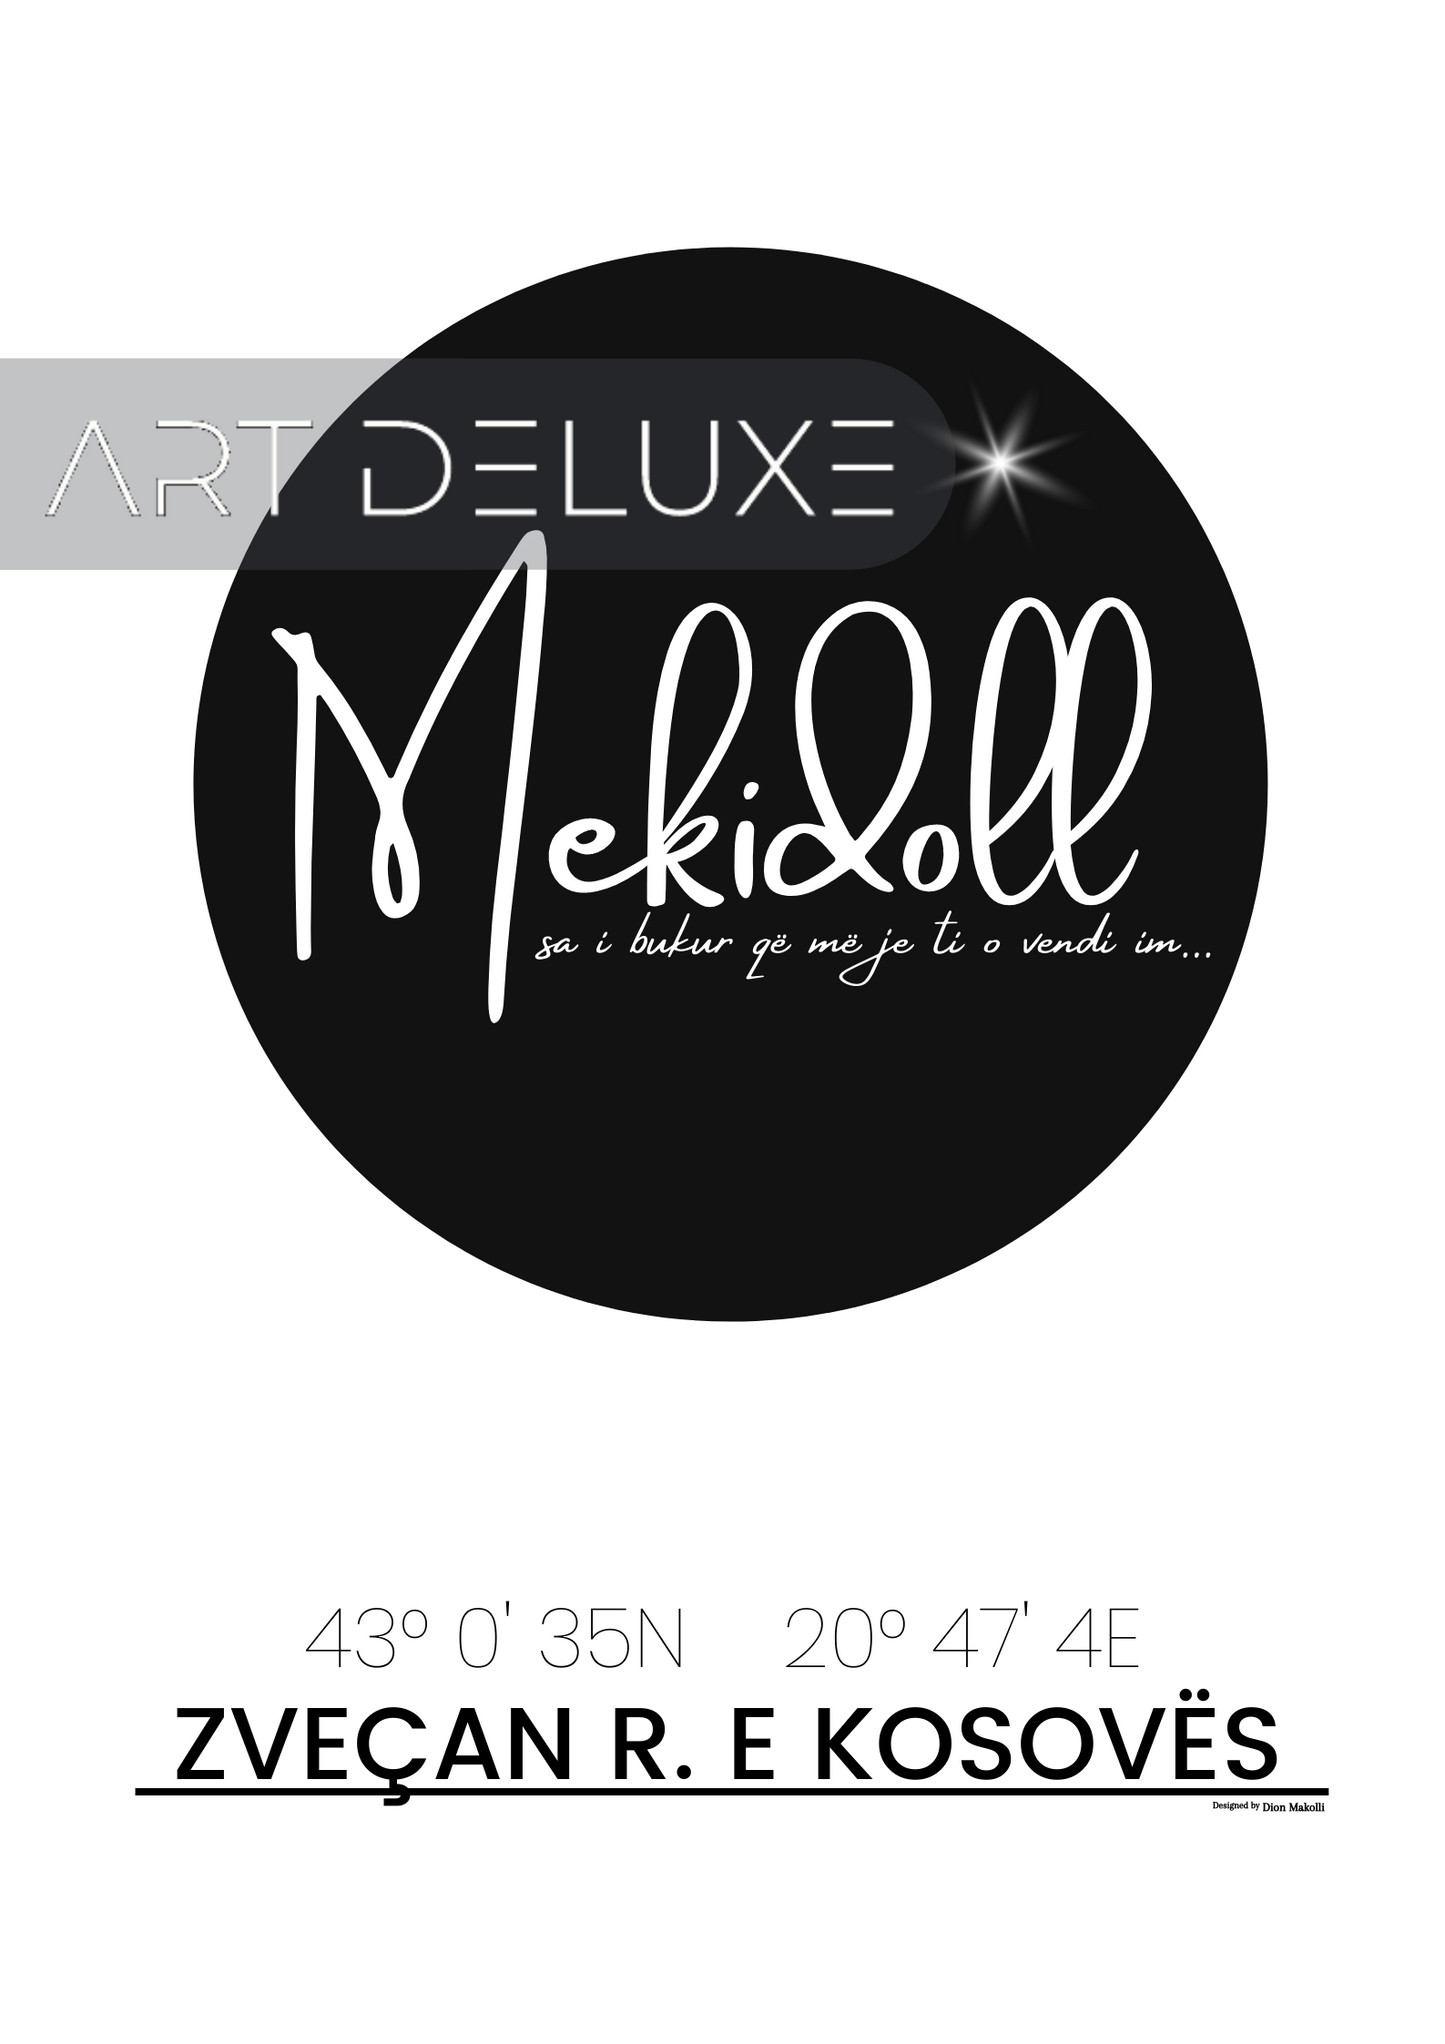 Mekidoll - poster